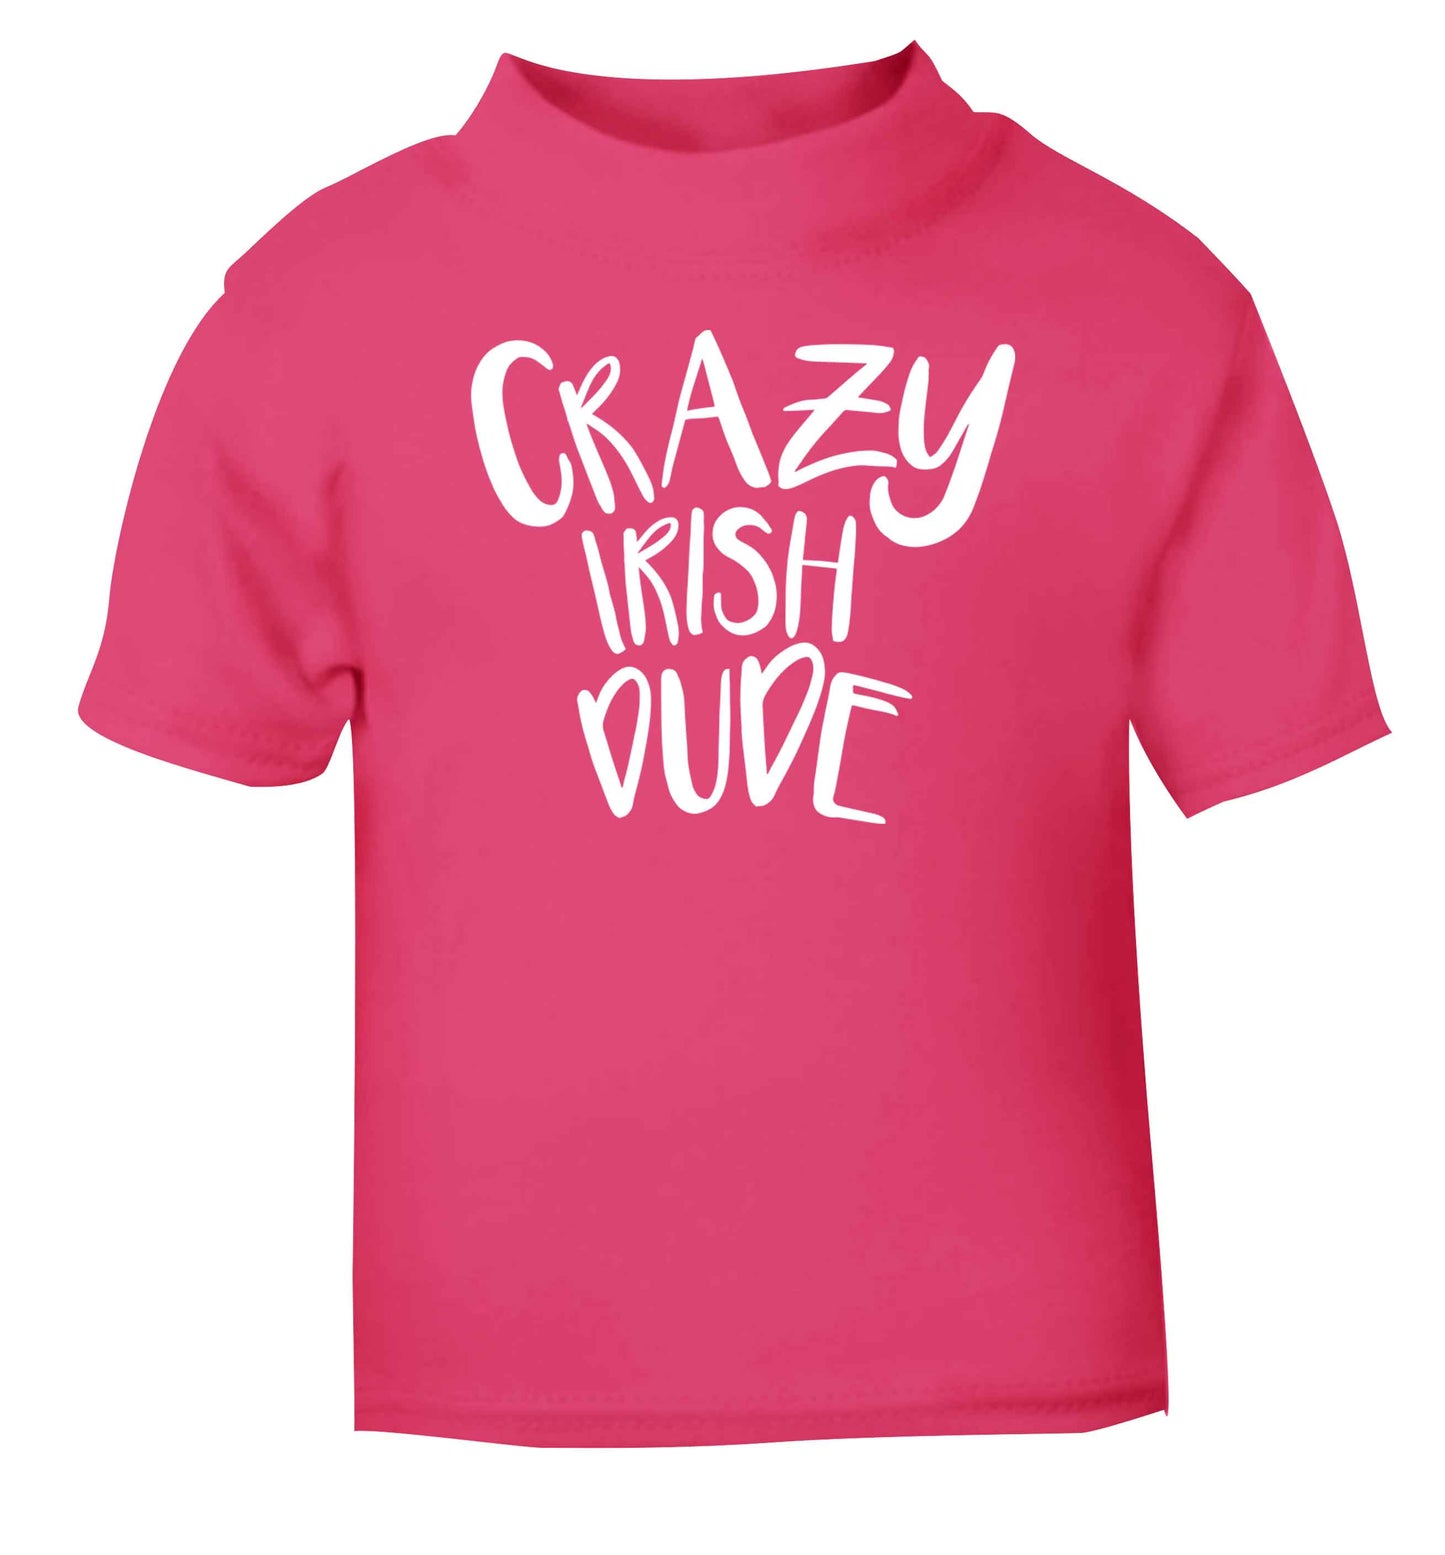 Crazy Irish dude pink baby toddler Tshirt 2 Years